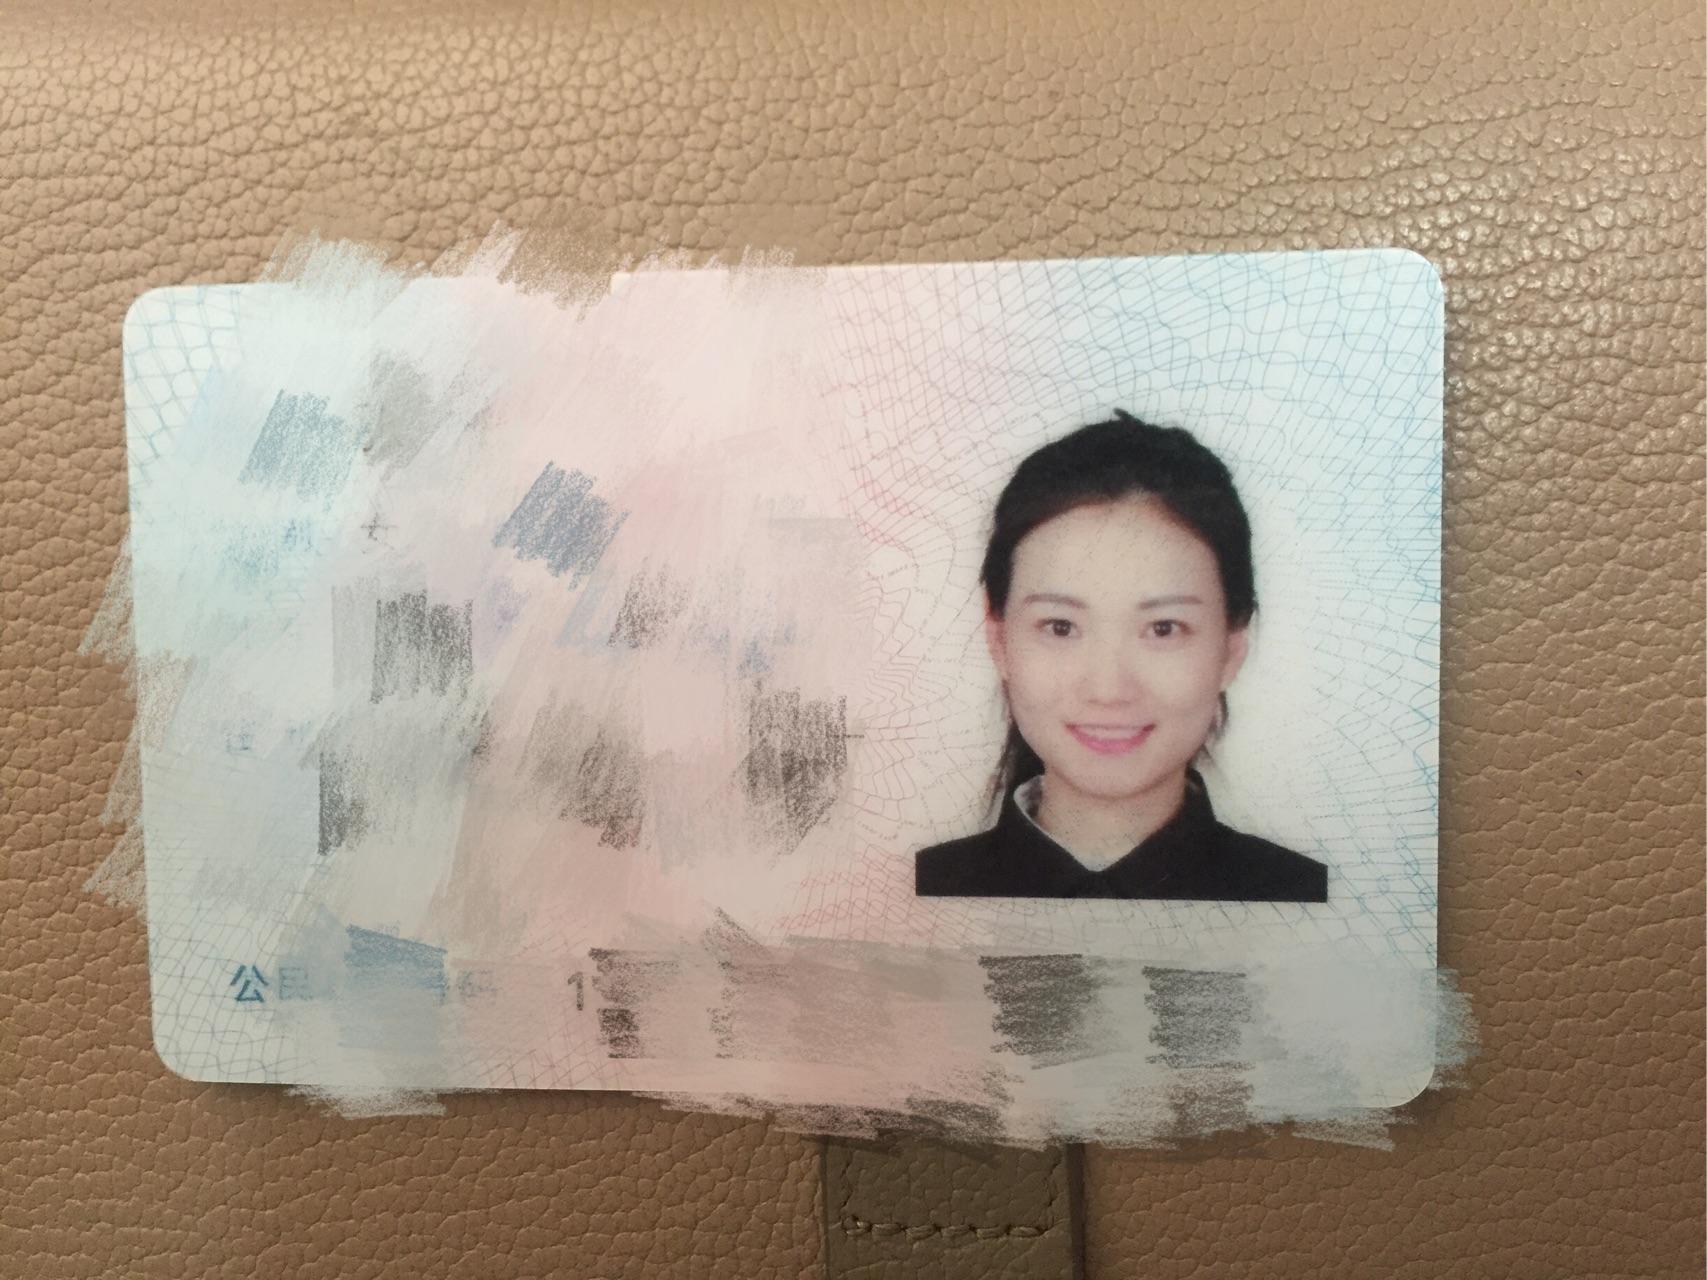 居民身份证图片浏览-居民身份证图片下载 - 酷吧图库